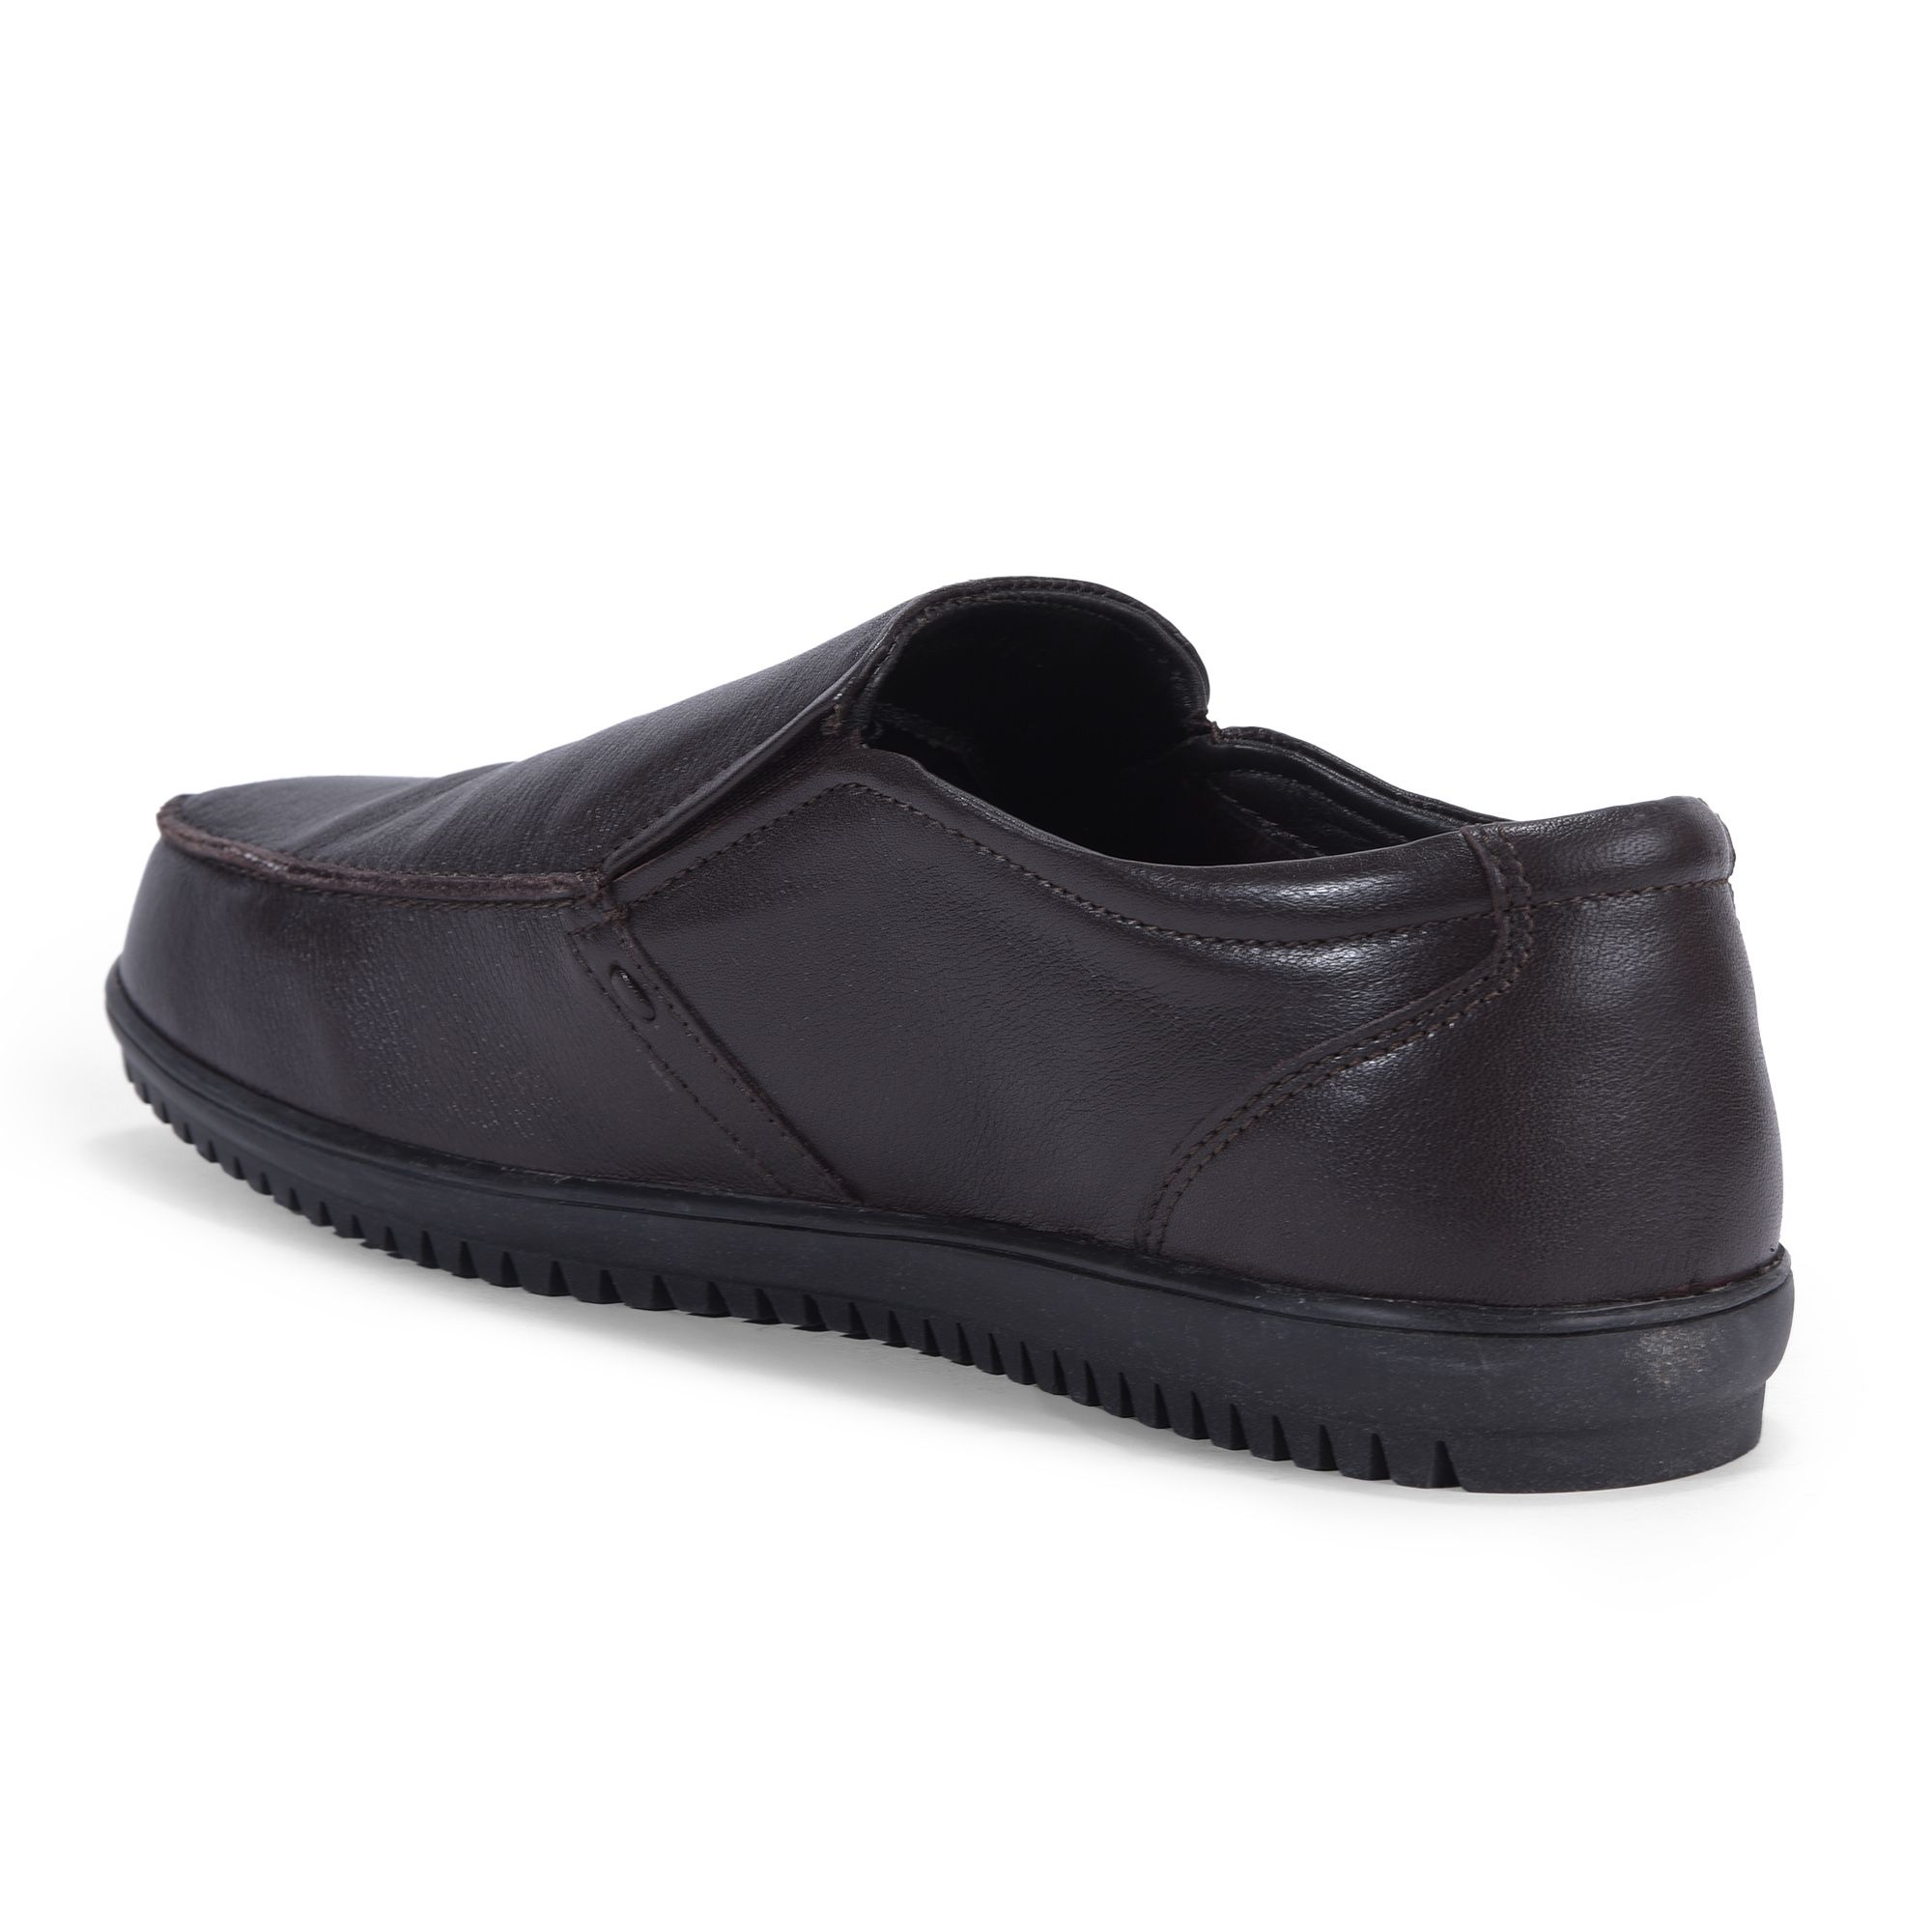 Dark brown slip-on shoe for men